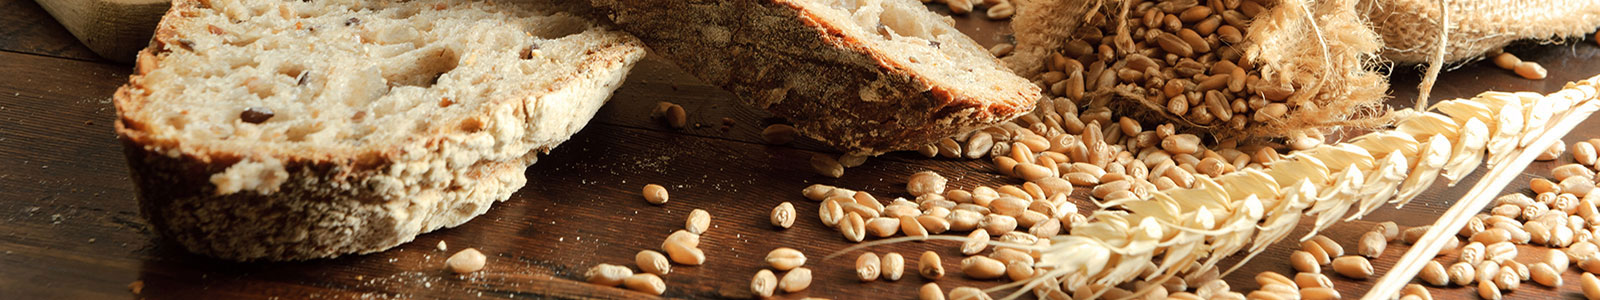 №1306 - Пшеничный хлеб и зерна